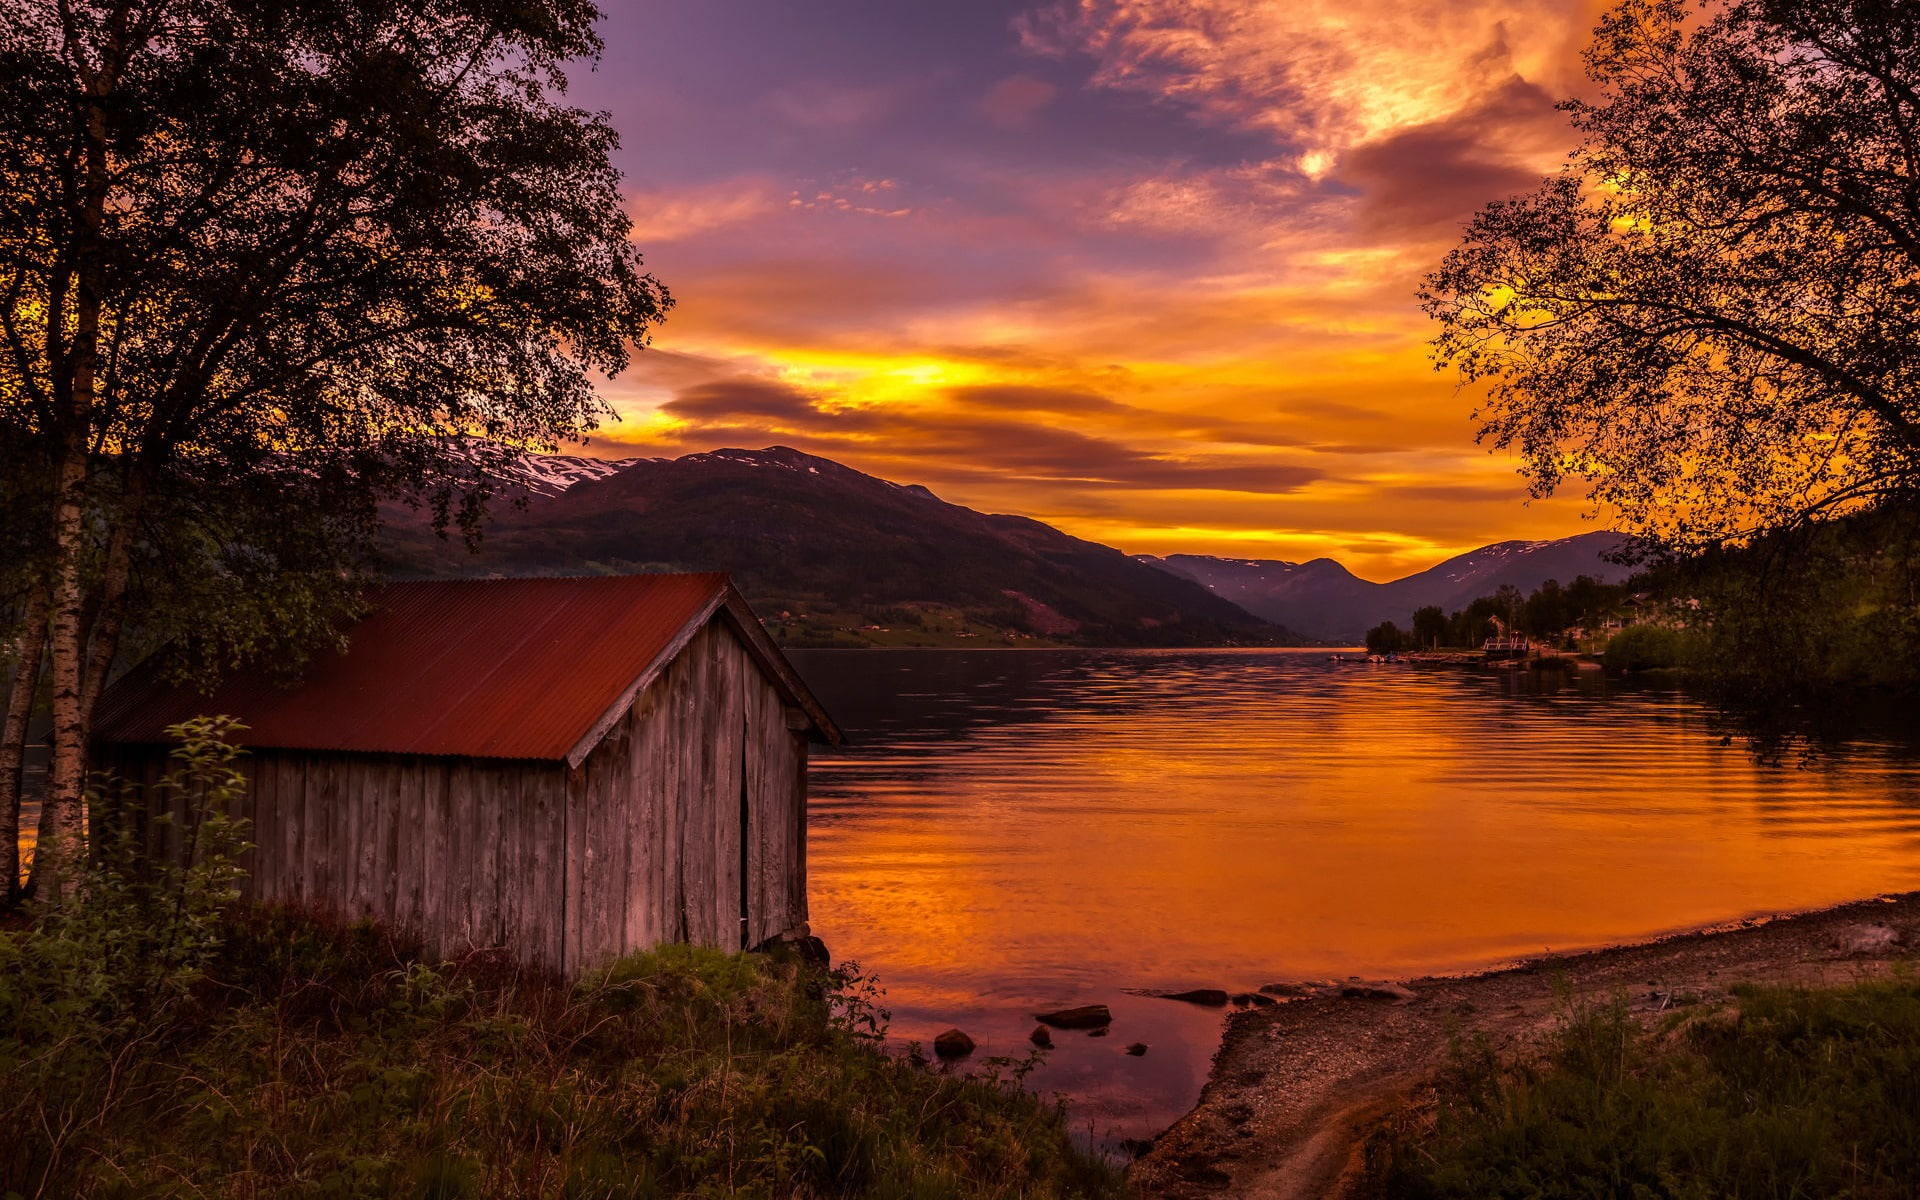 Norway, nature landscape, lake, sunset, trees, wood house